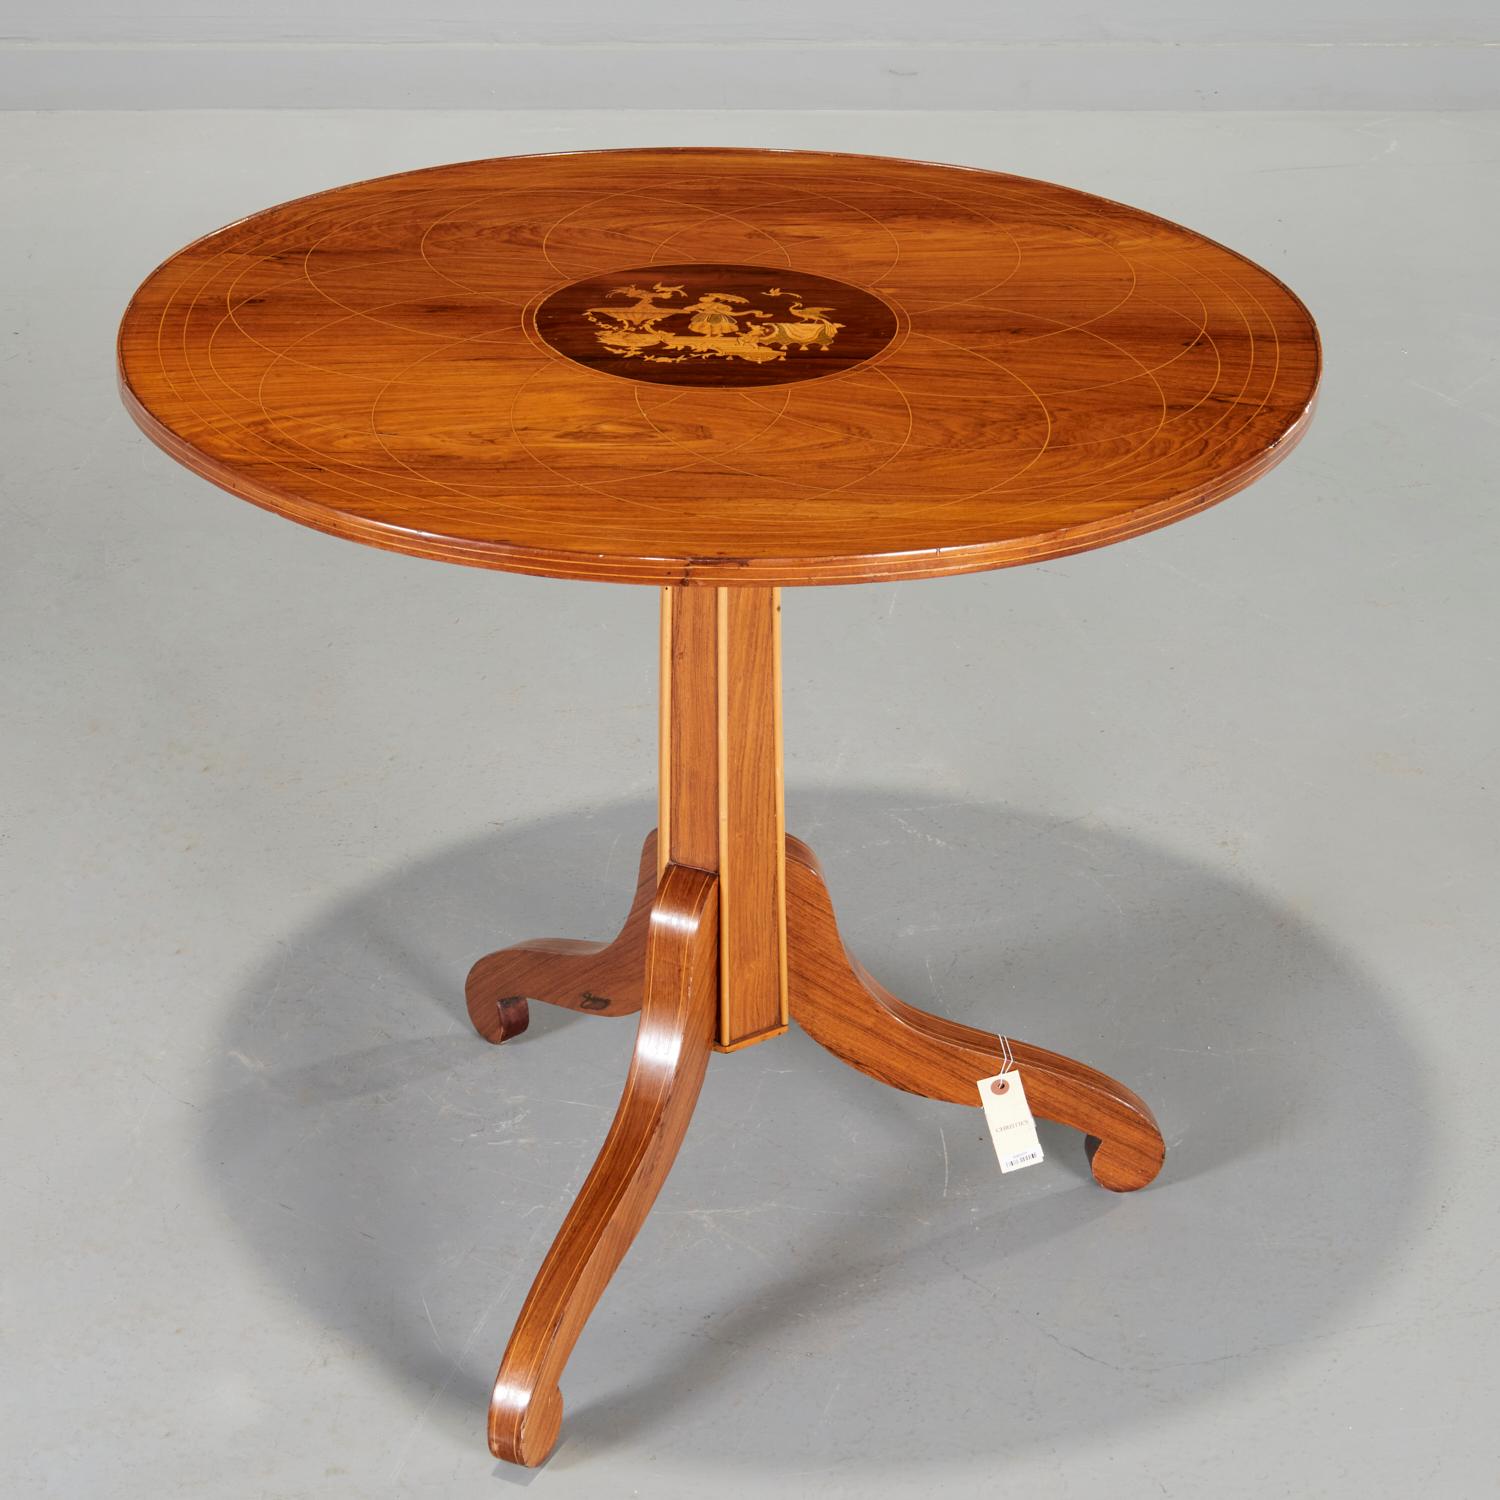 2. Quartal 19. Jh., mitteleuropäischer Tisch, gemischte Holzintarsien mit Farben auf indischem Palisander, mit kreisförmiger, kreuzgebänderter Kippplatte mit zentraler Intarsienarbeit in Form eines Medaillons, das eine Chinoiserie-Szene in einem